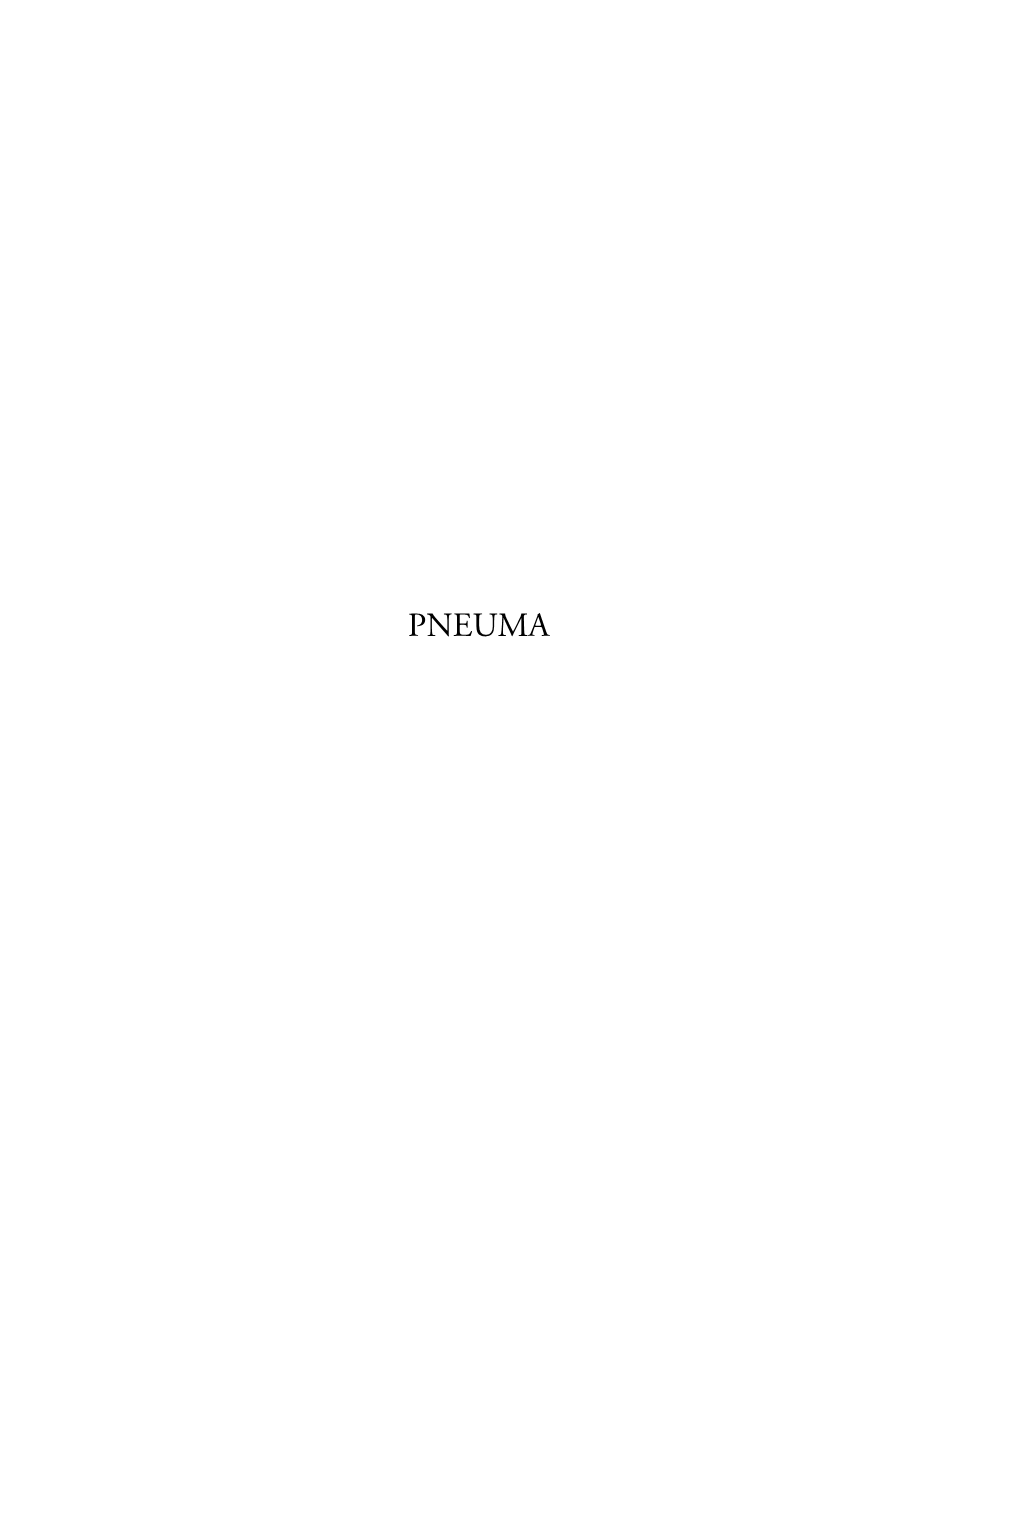 PNEUMA Pneuma Th E Journal of the Society for Pentecostal Studies